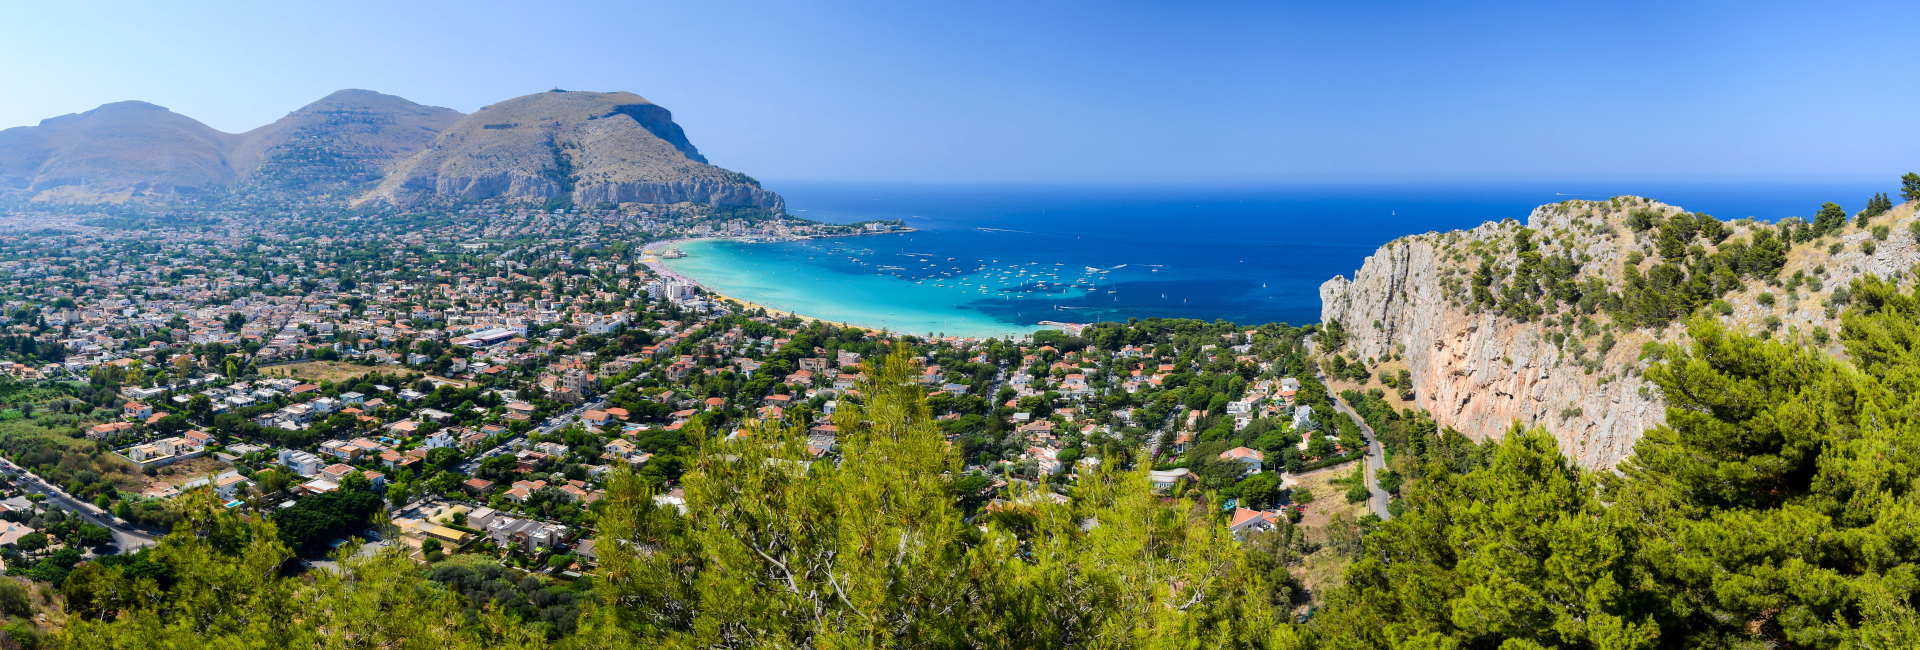 Mondello Gulf-Palermo-Sicily